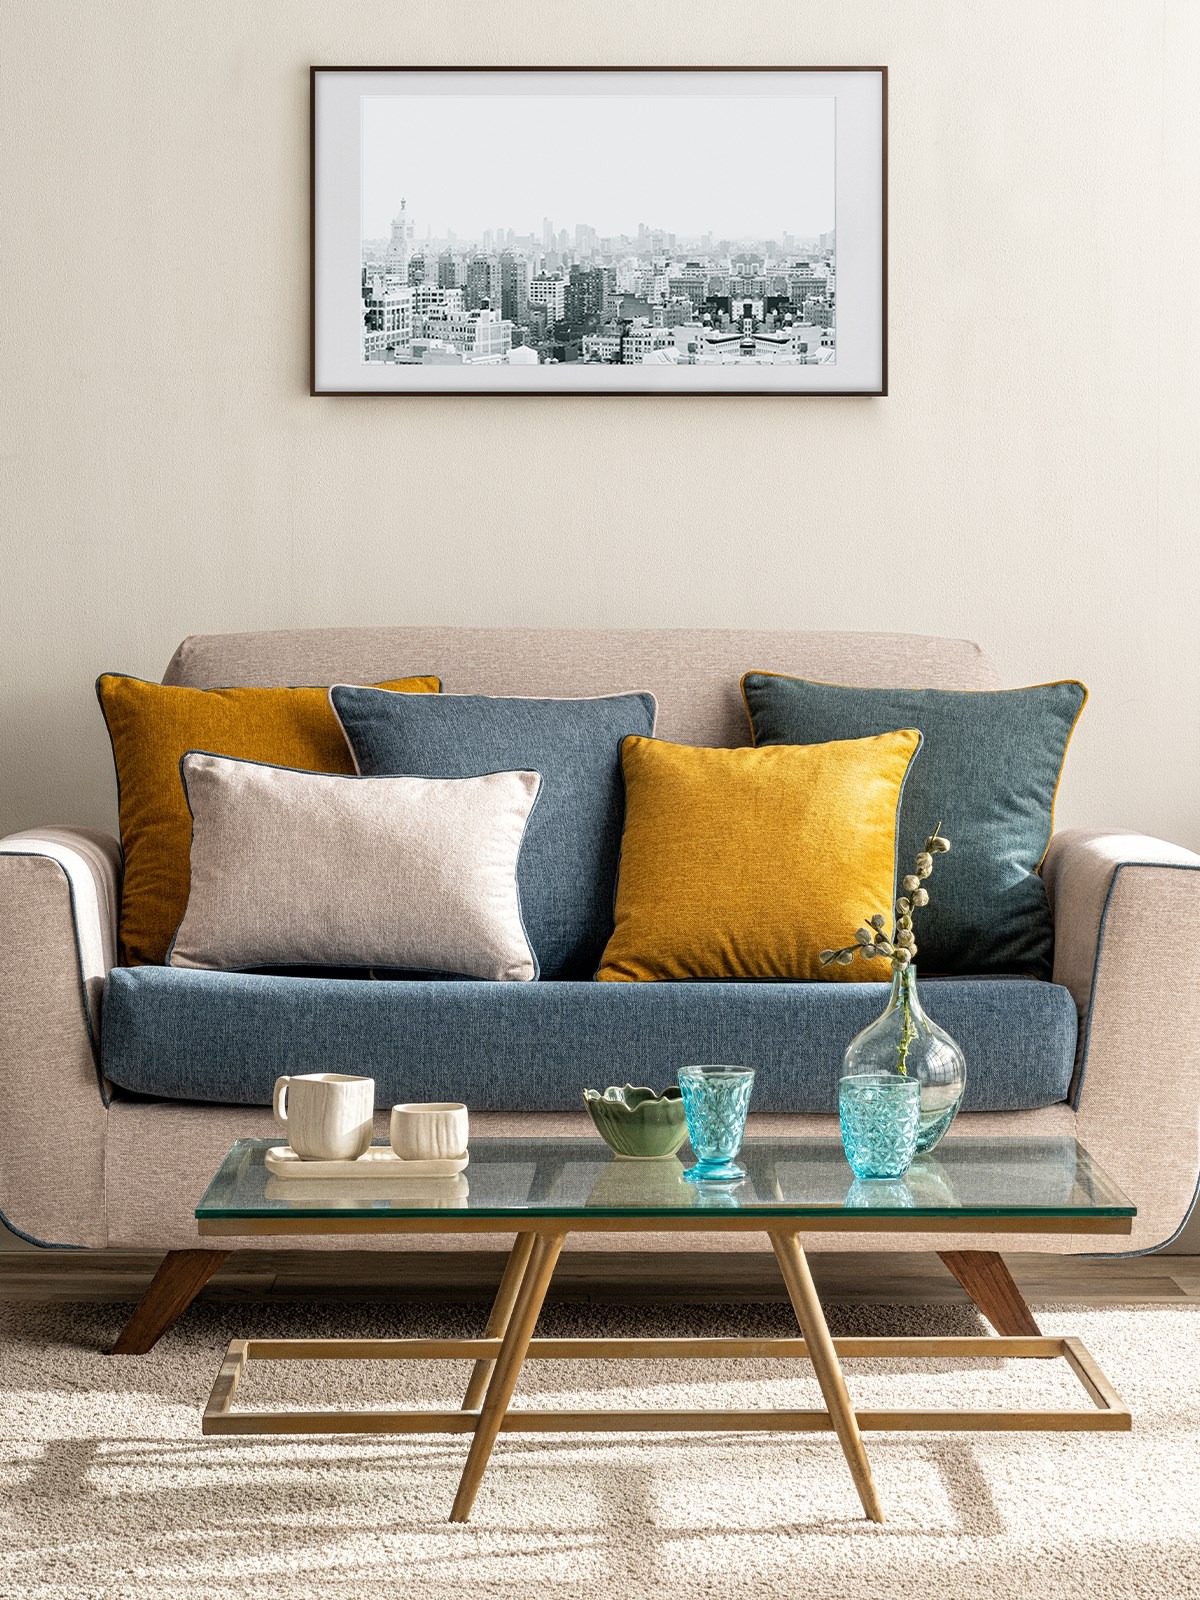 5+ Mẫu Ghế Sofa Decor Giá Rẻ Và Những Gợi Ý Bài Trí Đẹp, Sáng Tạo Nhất